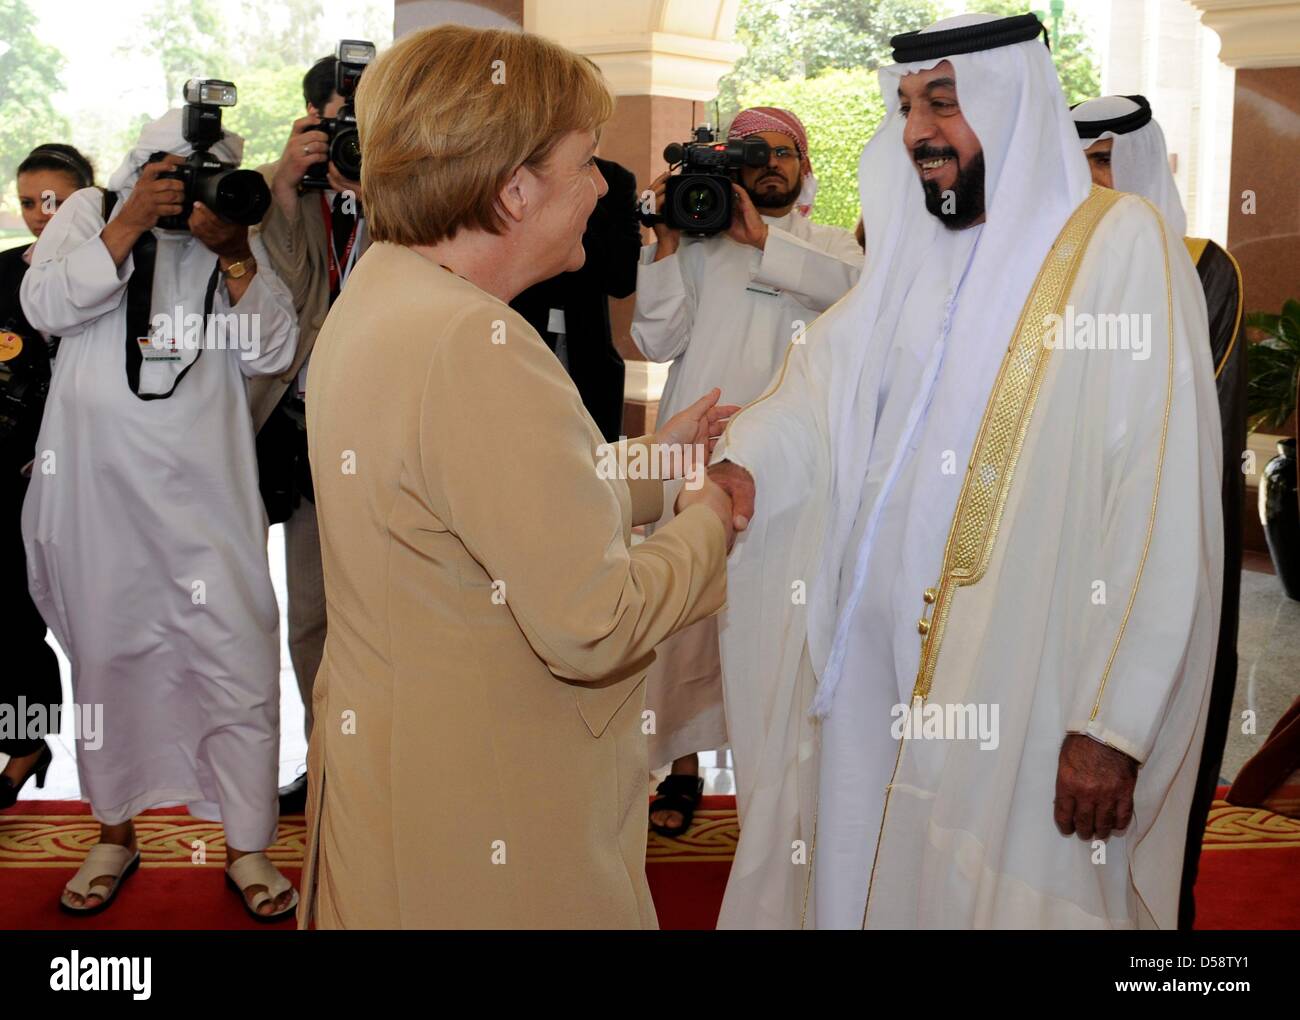 La chancelière allemande, Angela Merkel, est accueilli par le président des EAU, Cheikh Khalifa bin Zayed Al Nahyan, Président de l'Al Mushrif's Palace à Abu Dhabi, Emirats arabes unis (EAU), 25 mai 2010. Merkel se rendra dans quatre des six pays du Conseil de coopération du Golfe jusqu'au 27 mai 2010 pour améliorer les liens économiques et politiques. Poto : RAINER JENSEN Banque D'Images